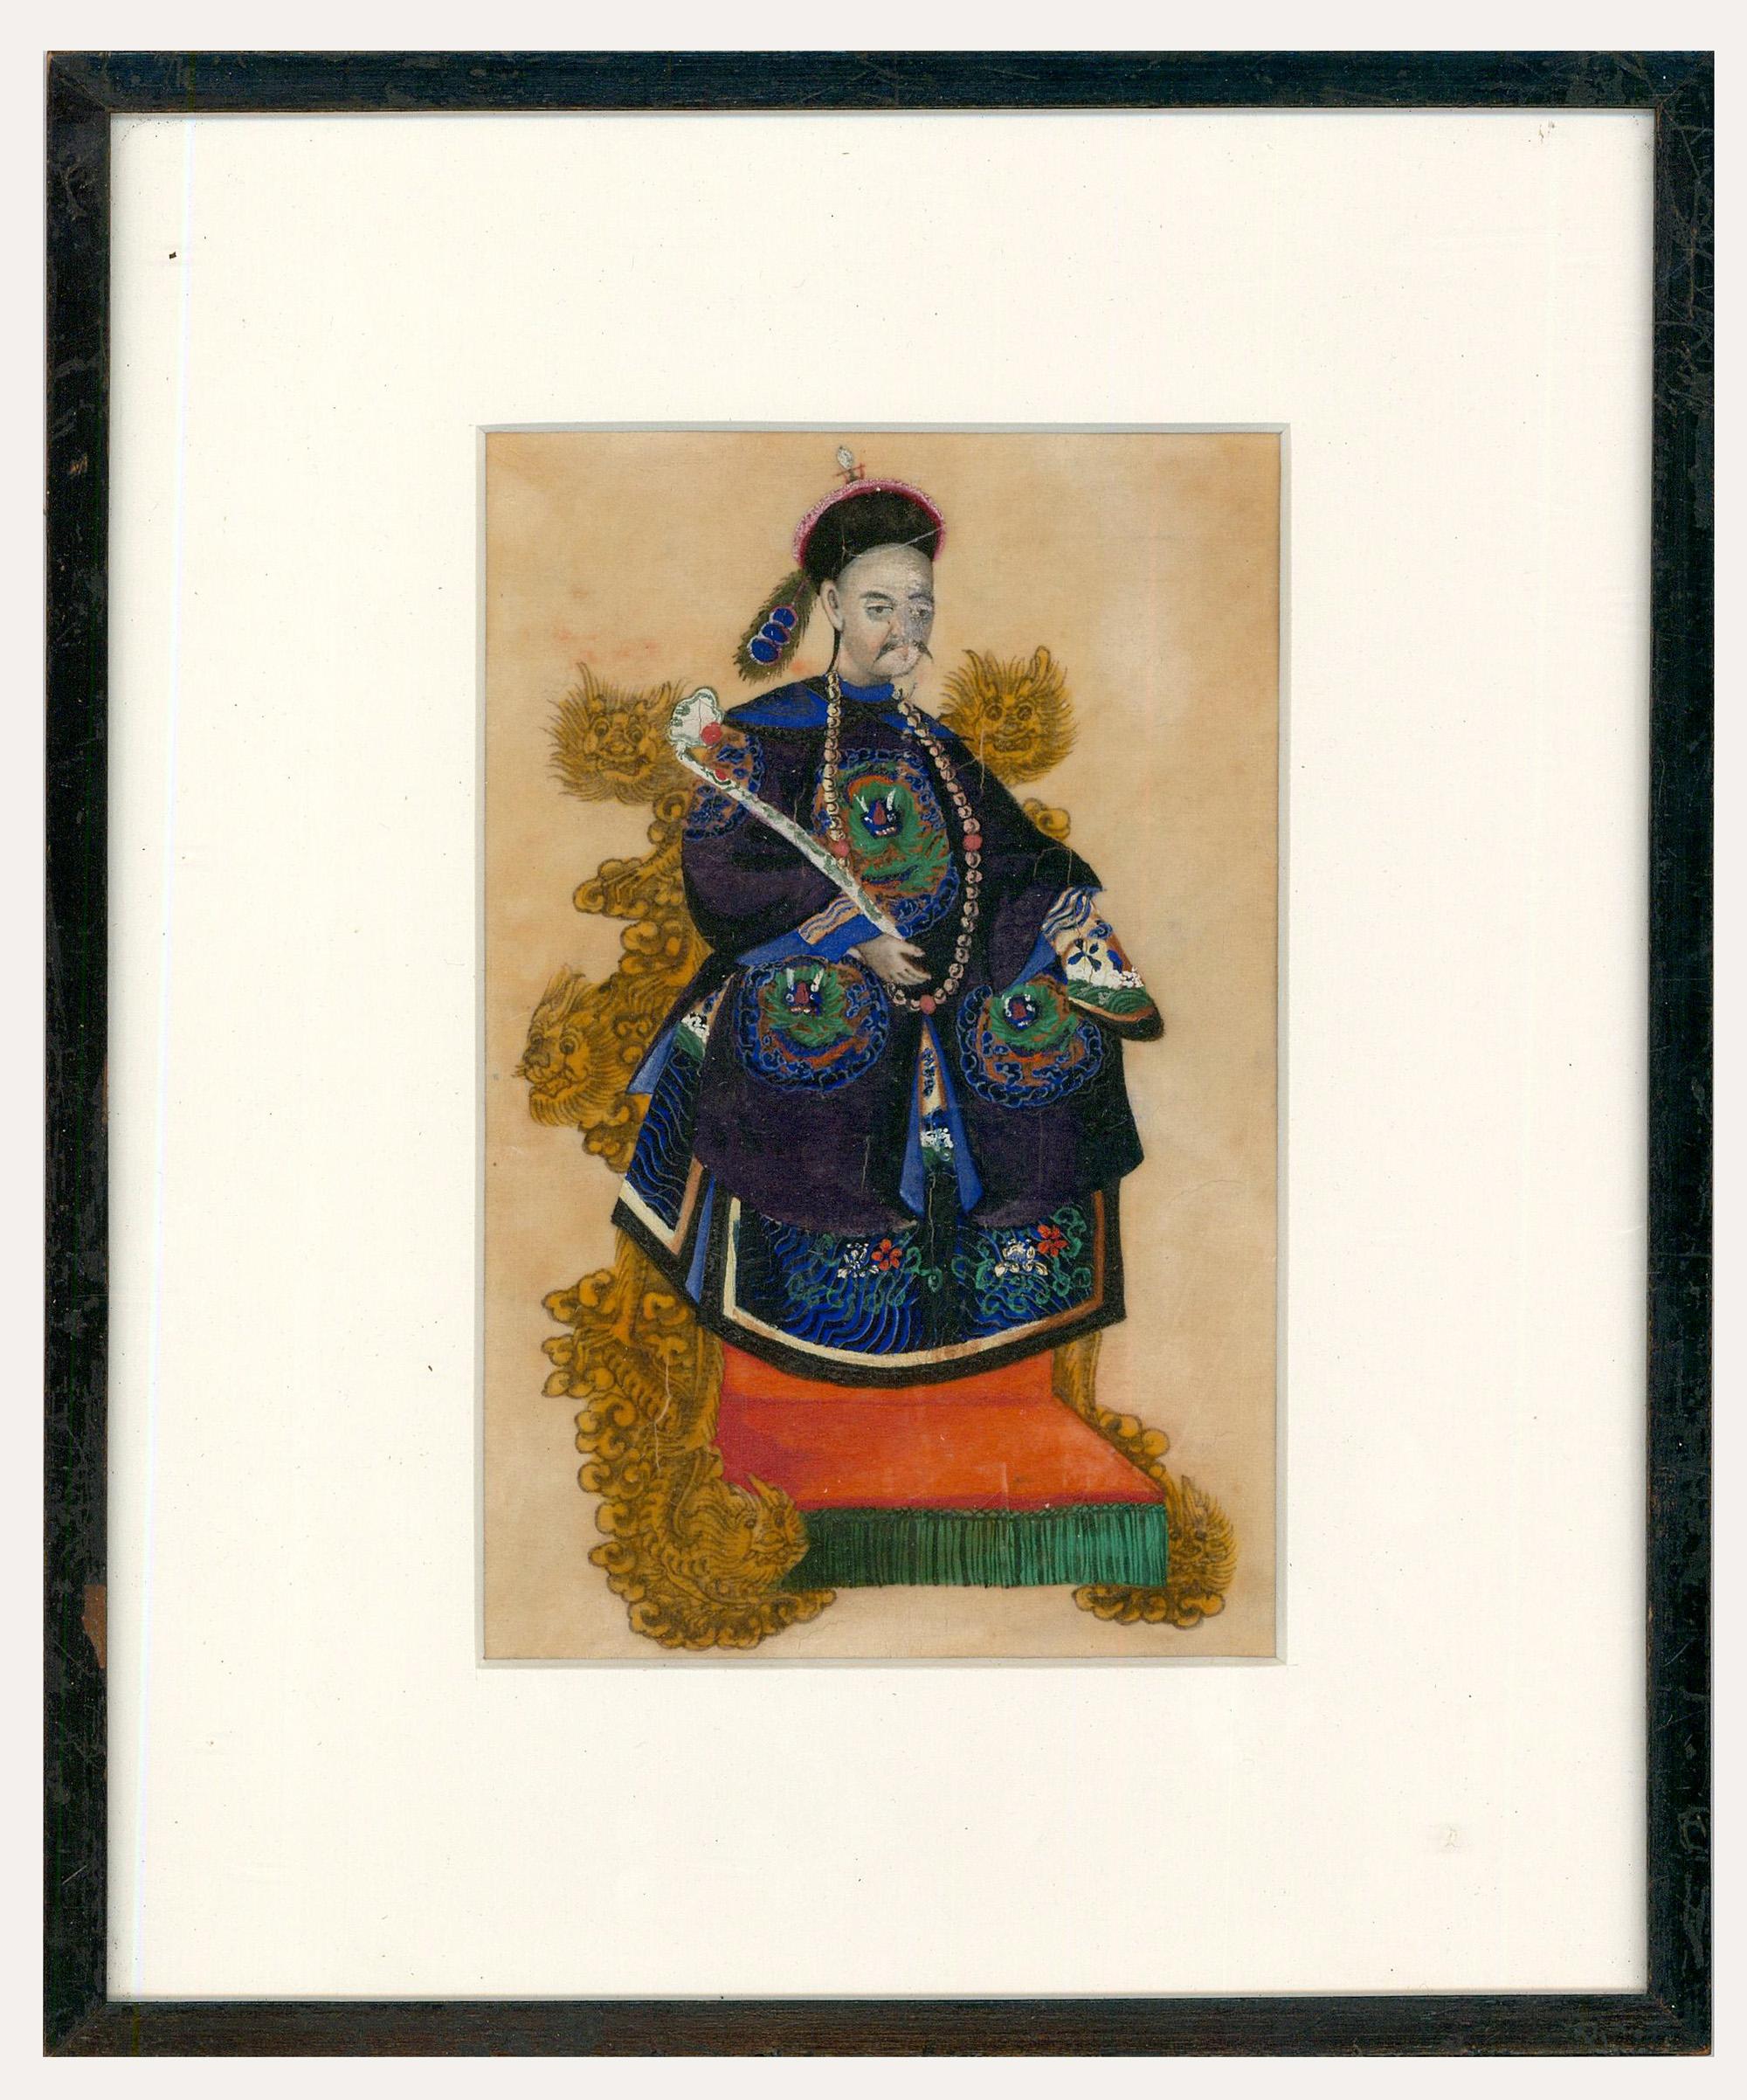 Unknown Portrait - Fine 19th Century Chinese School Watercolour - The Emperor